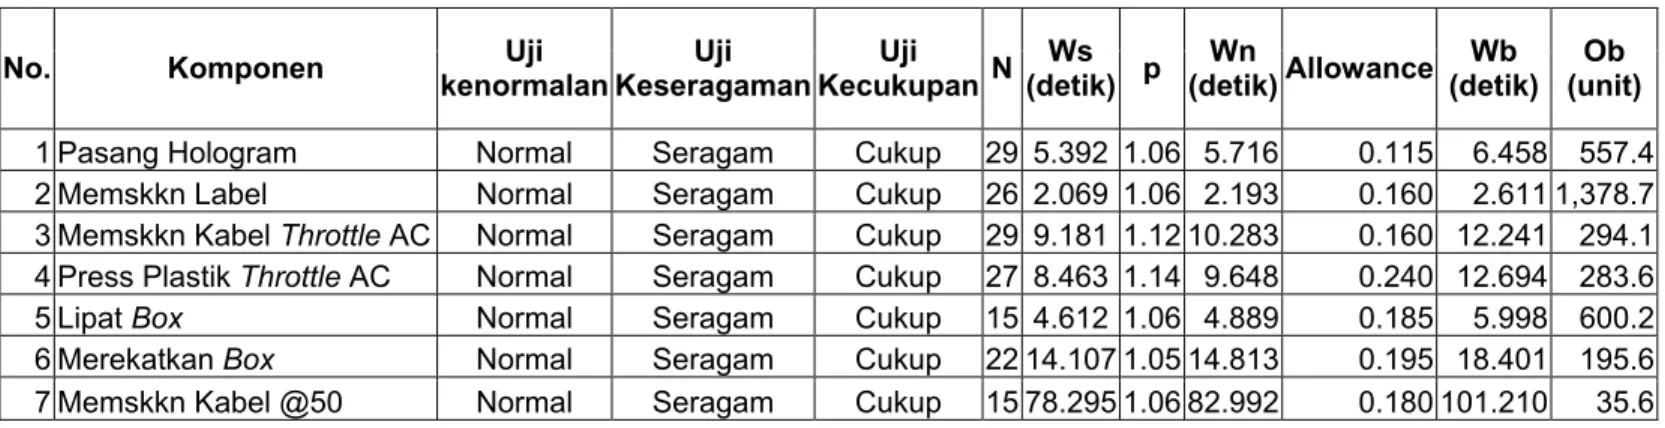 Tabel 4.2.2.18. Daftar Waktu Baku dan Kapasitas Proses Produksi Packing untuk ASKI_Kabel Throttle Anak Cabang 